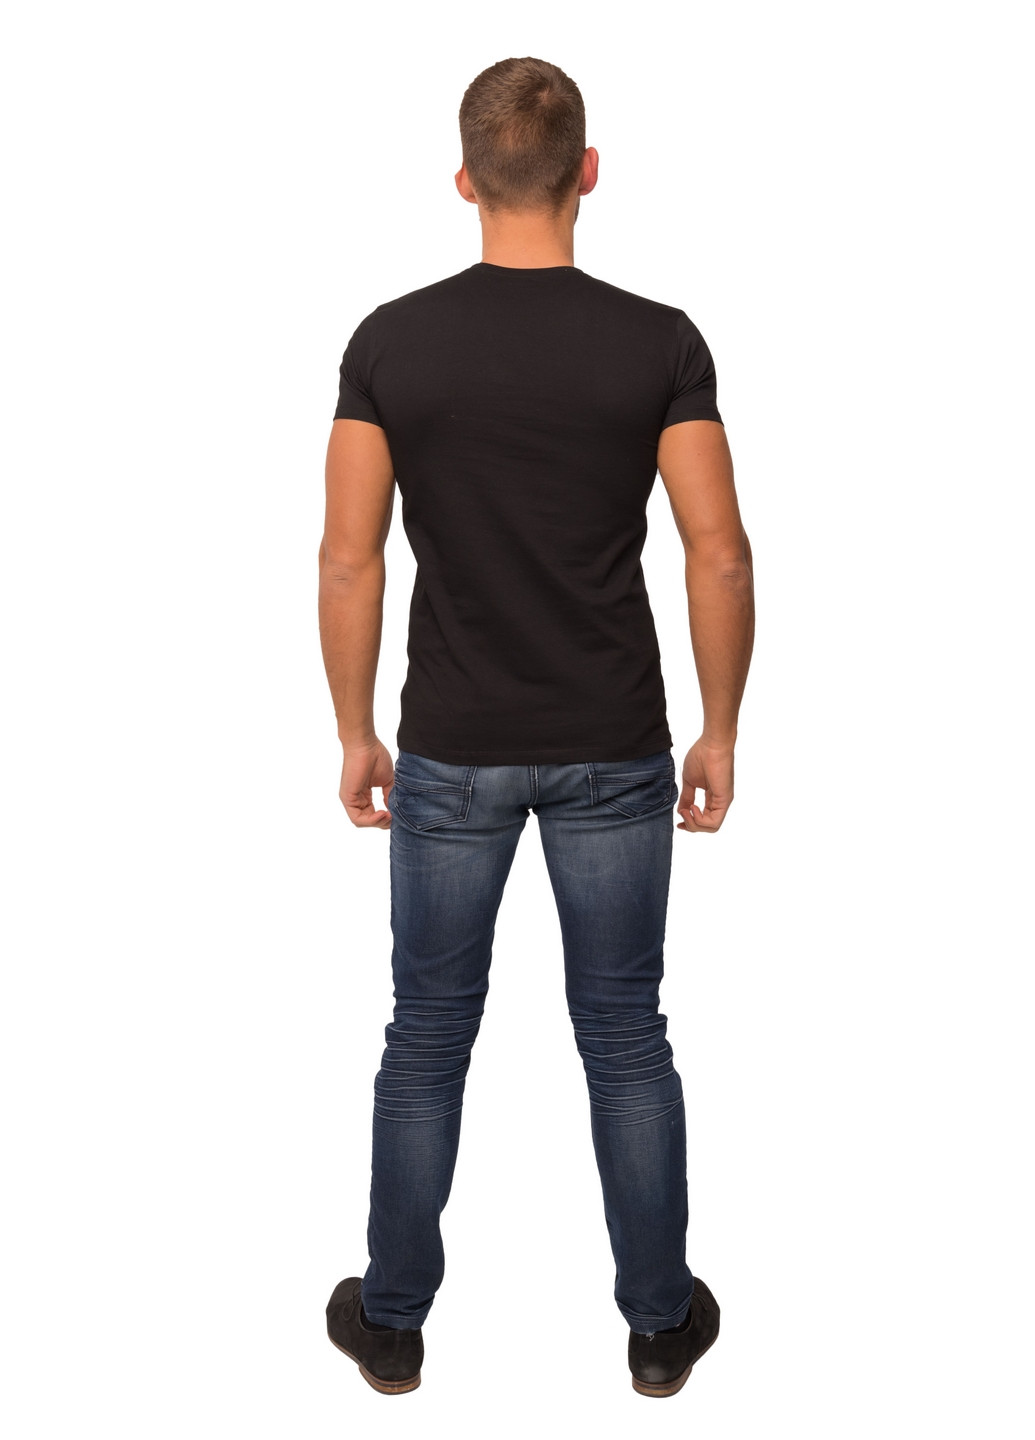 Черная футболка мужская Наталюкс 12-1338